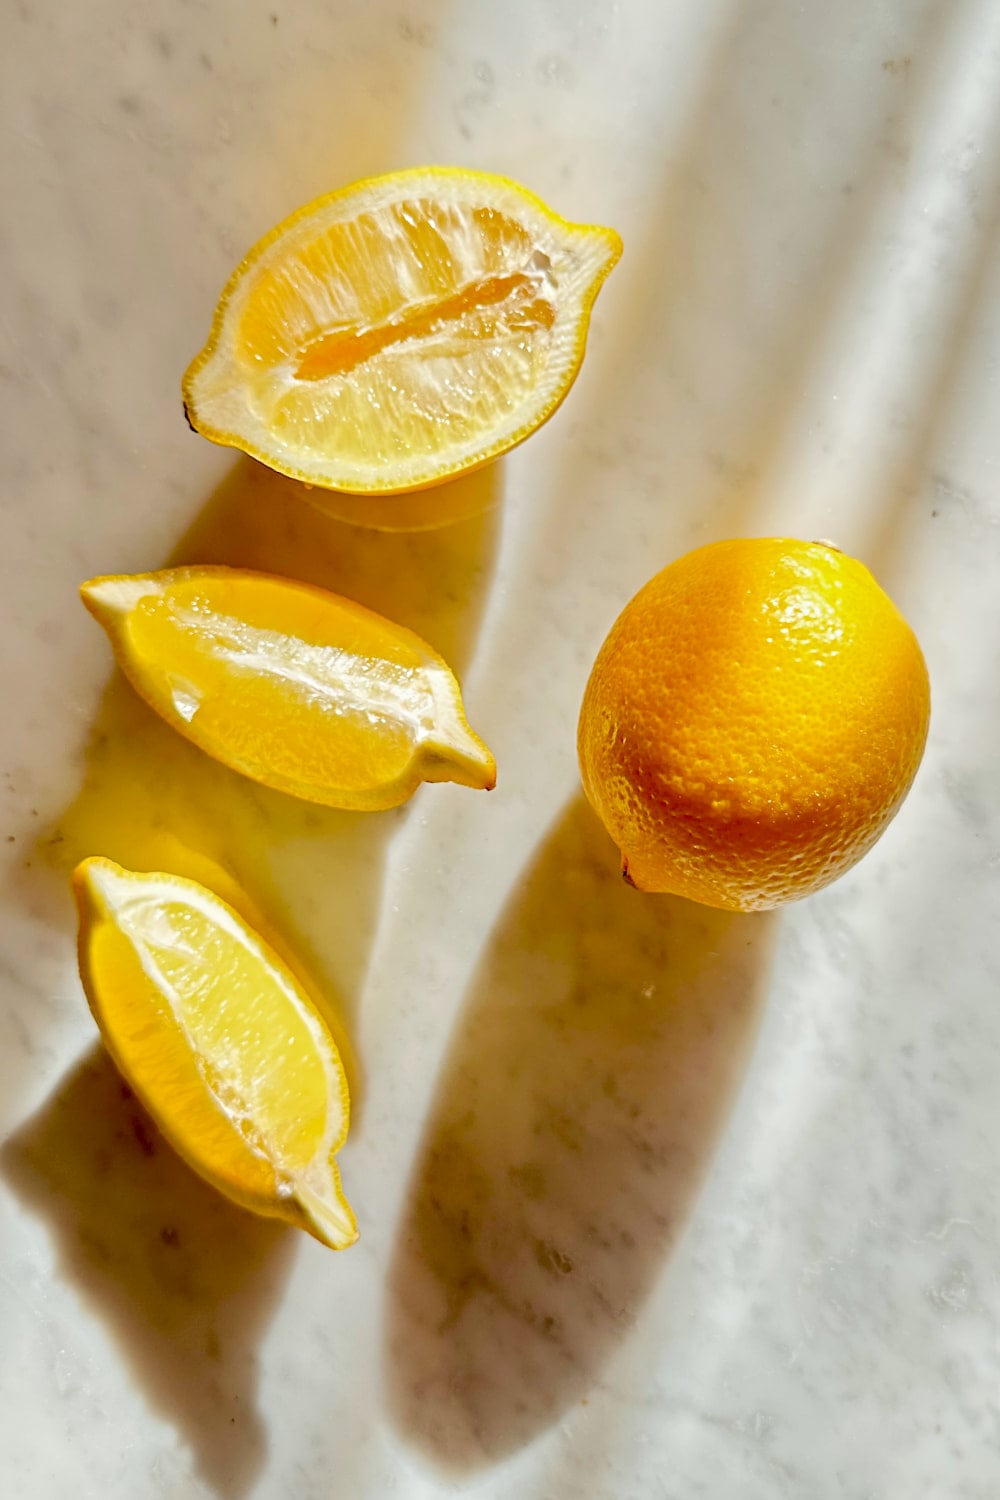 Juicy lemons to make creamy lemon garlic pasta.